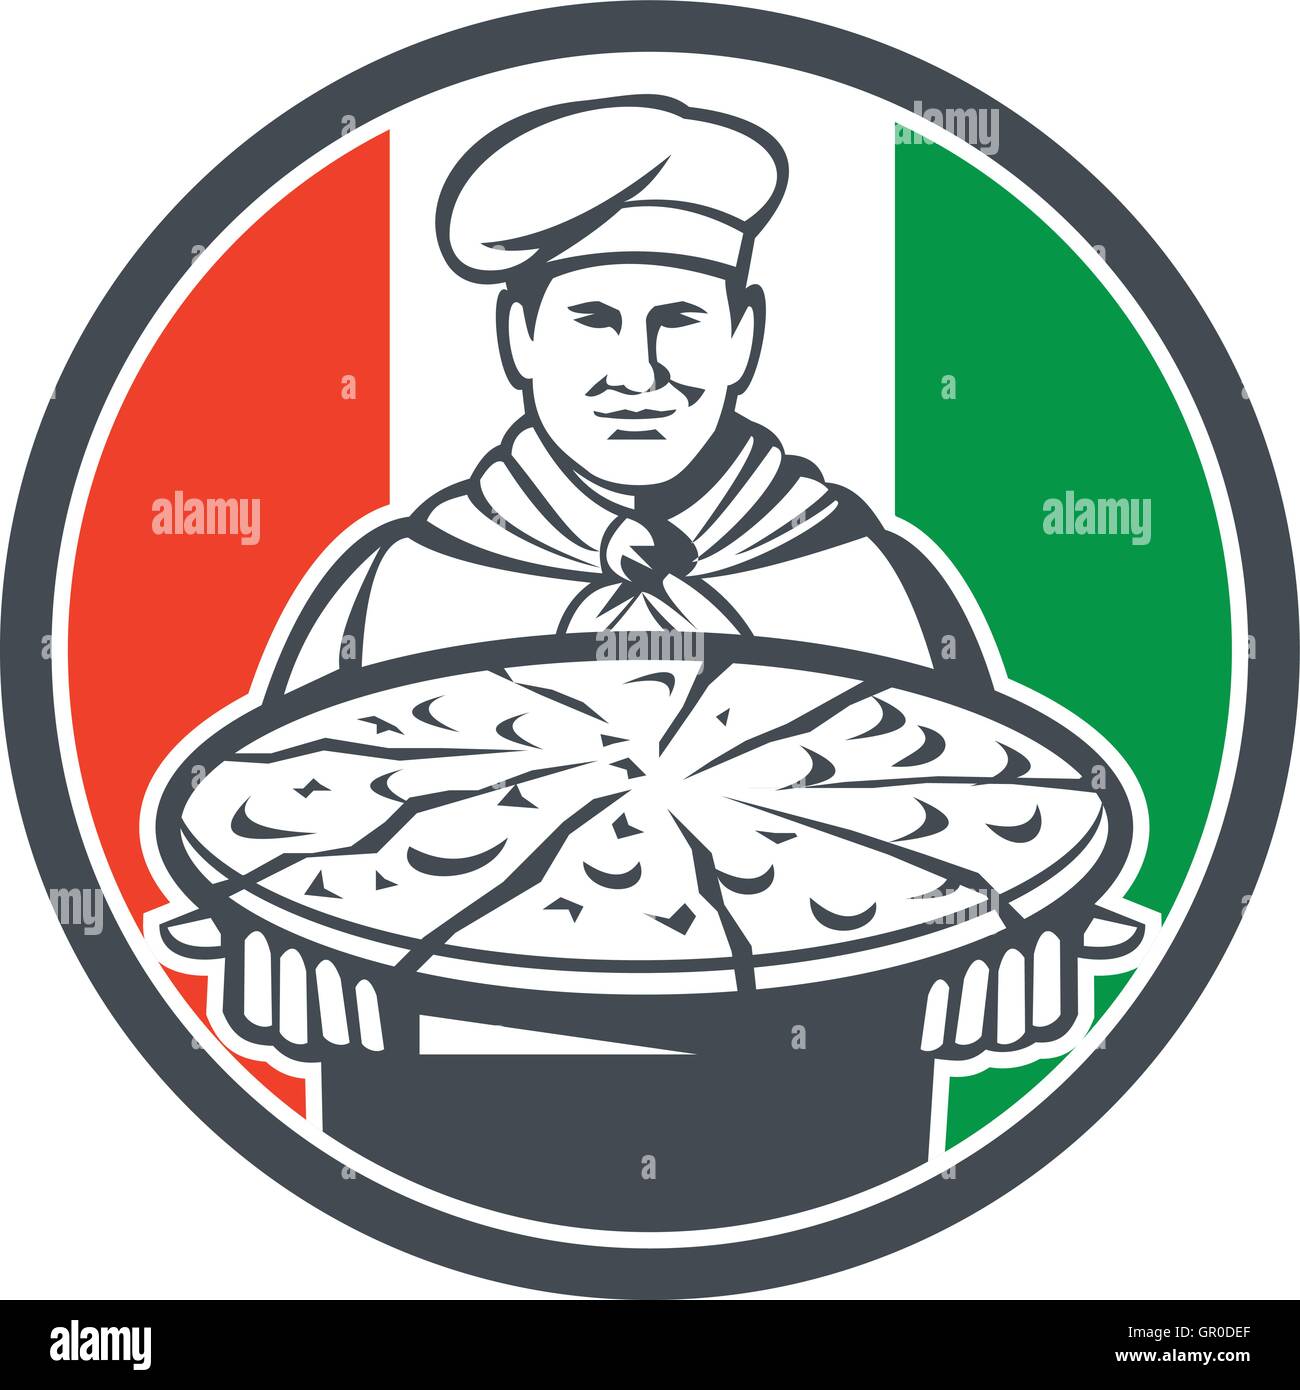 Illustrazione di un cuoco italiano, cuocere baker che serve pizza platter rivolto verso la parte anteriore impostato all'interno del cerchio con la bandiera dell'Italia in background fatto in stile retrò. Illustrazione Vettoriale